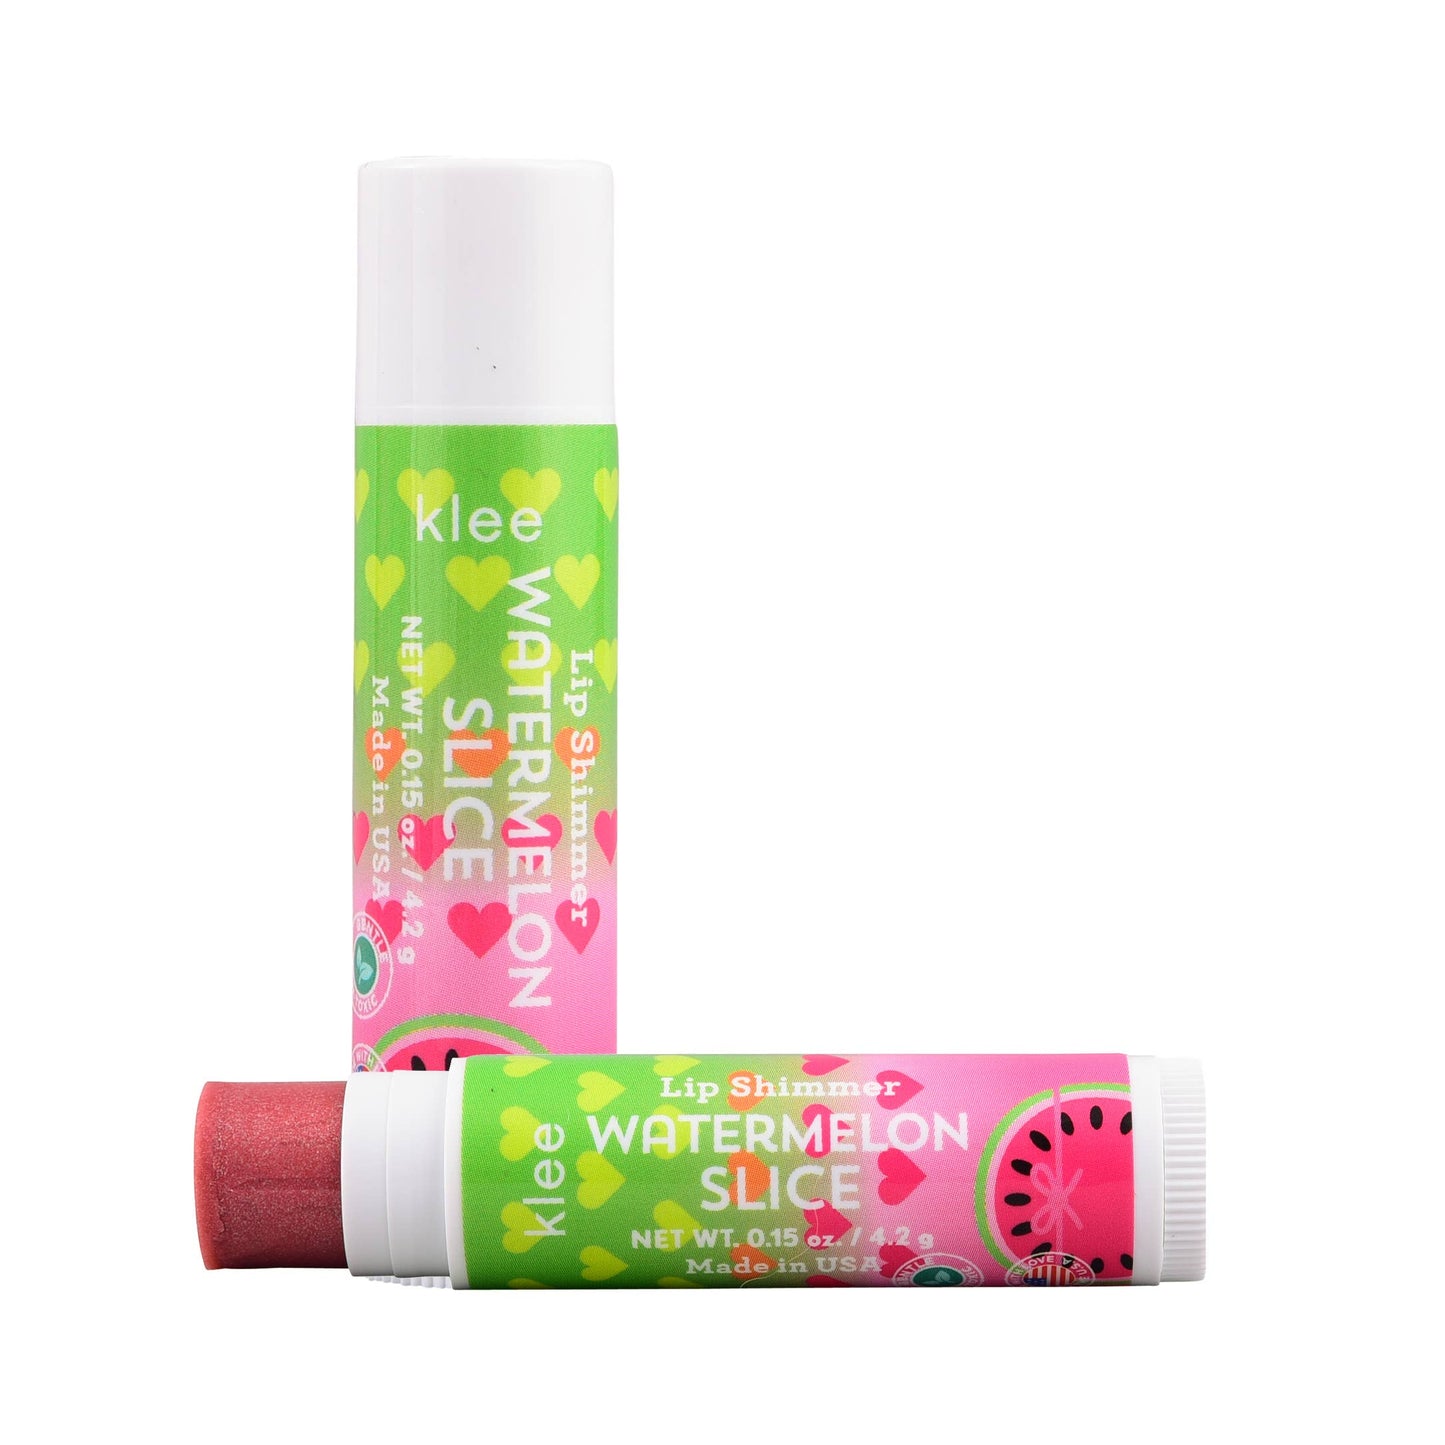 Inside Out - Bioglitter, Fragrance and Lip Shimmer Set